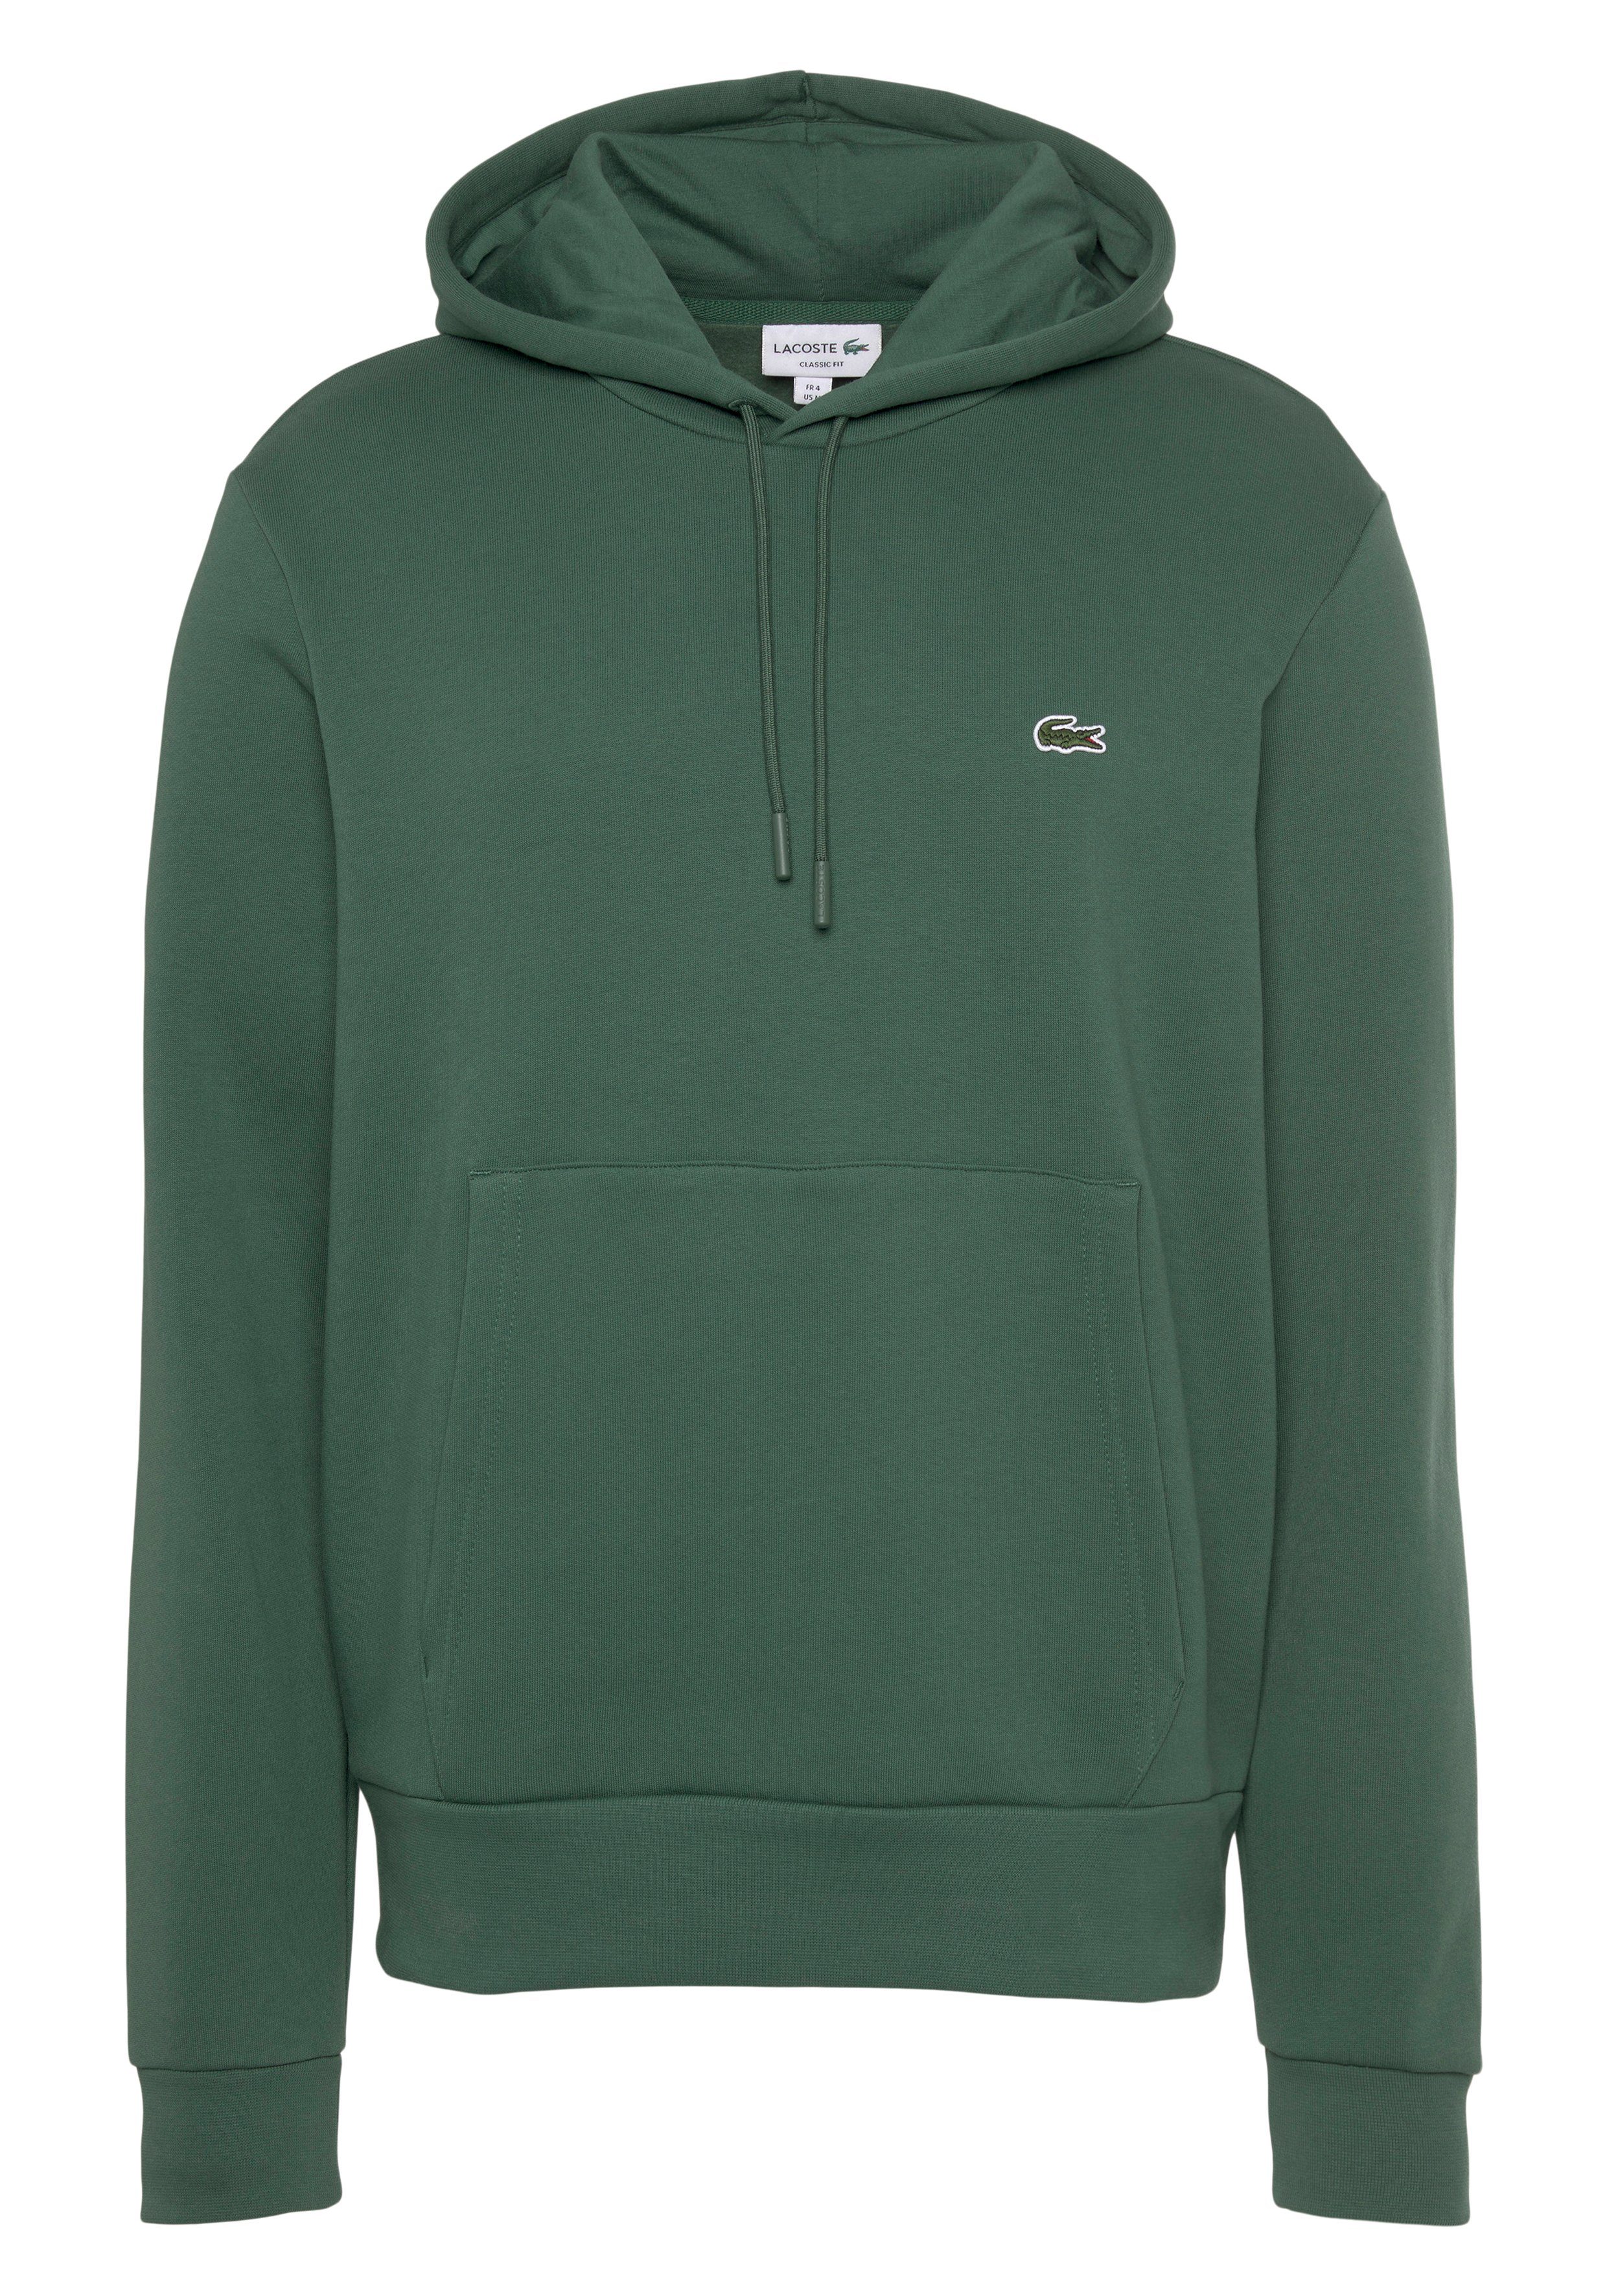 Grüne Lacoste Herren Sweatshirts online kaufen | OTTO